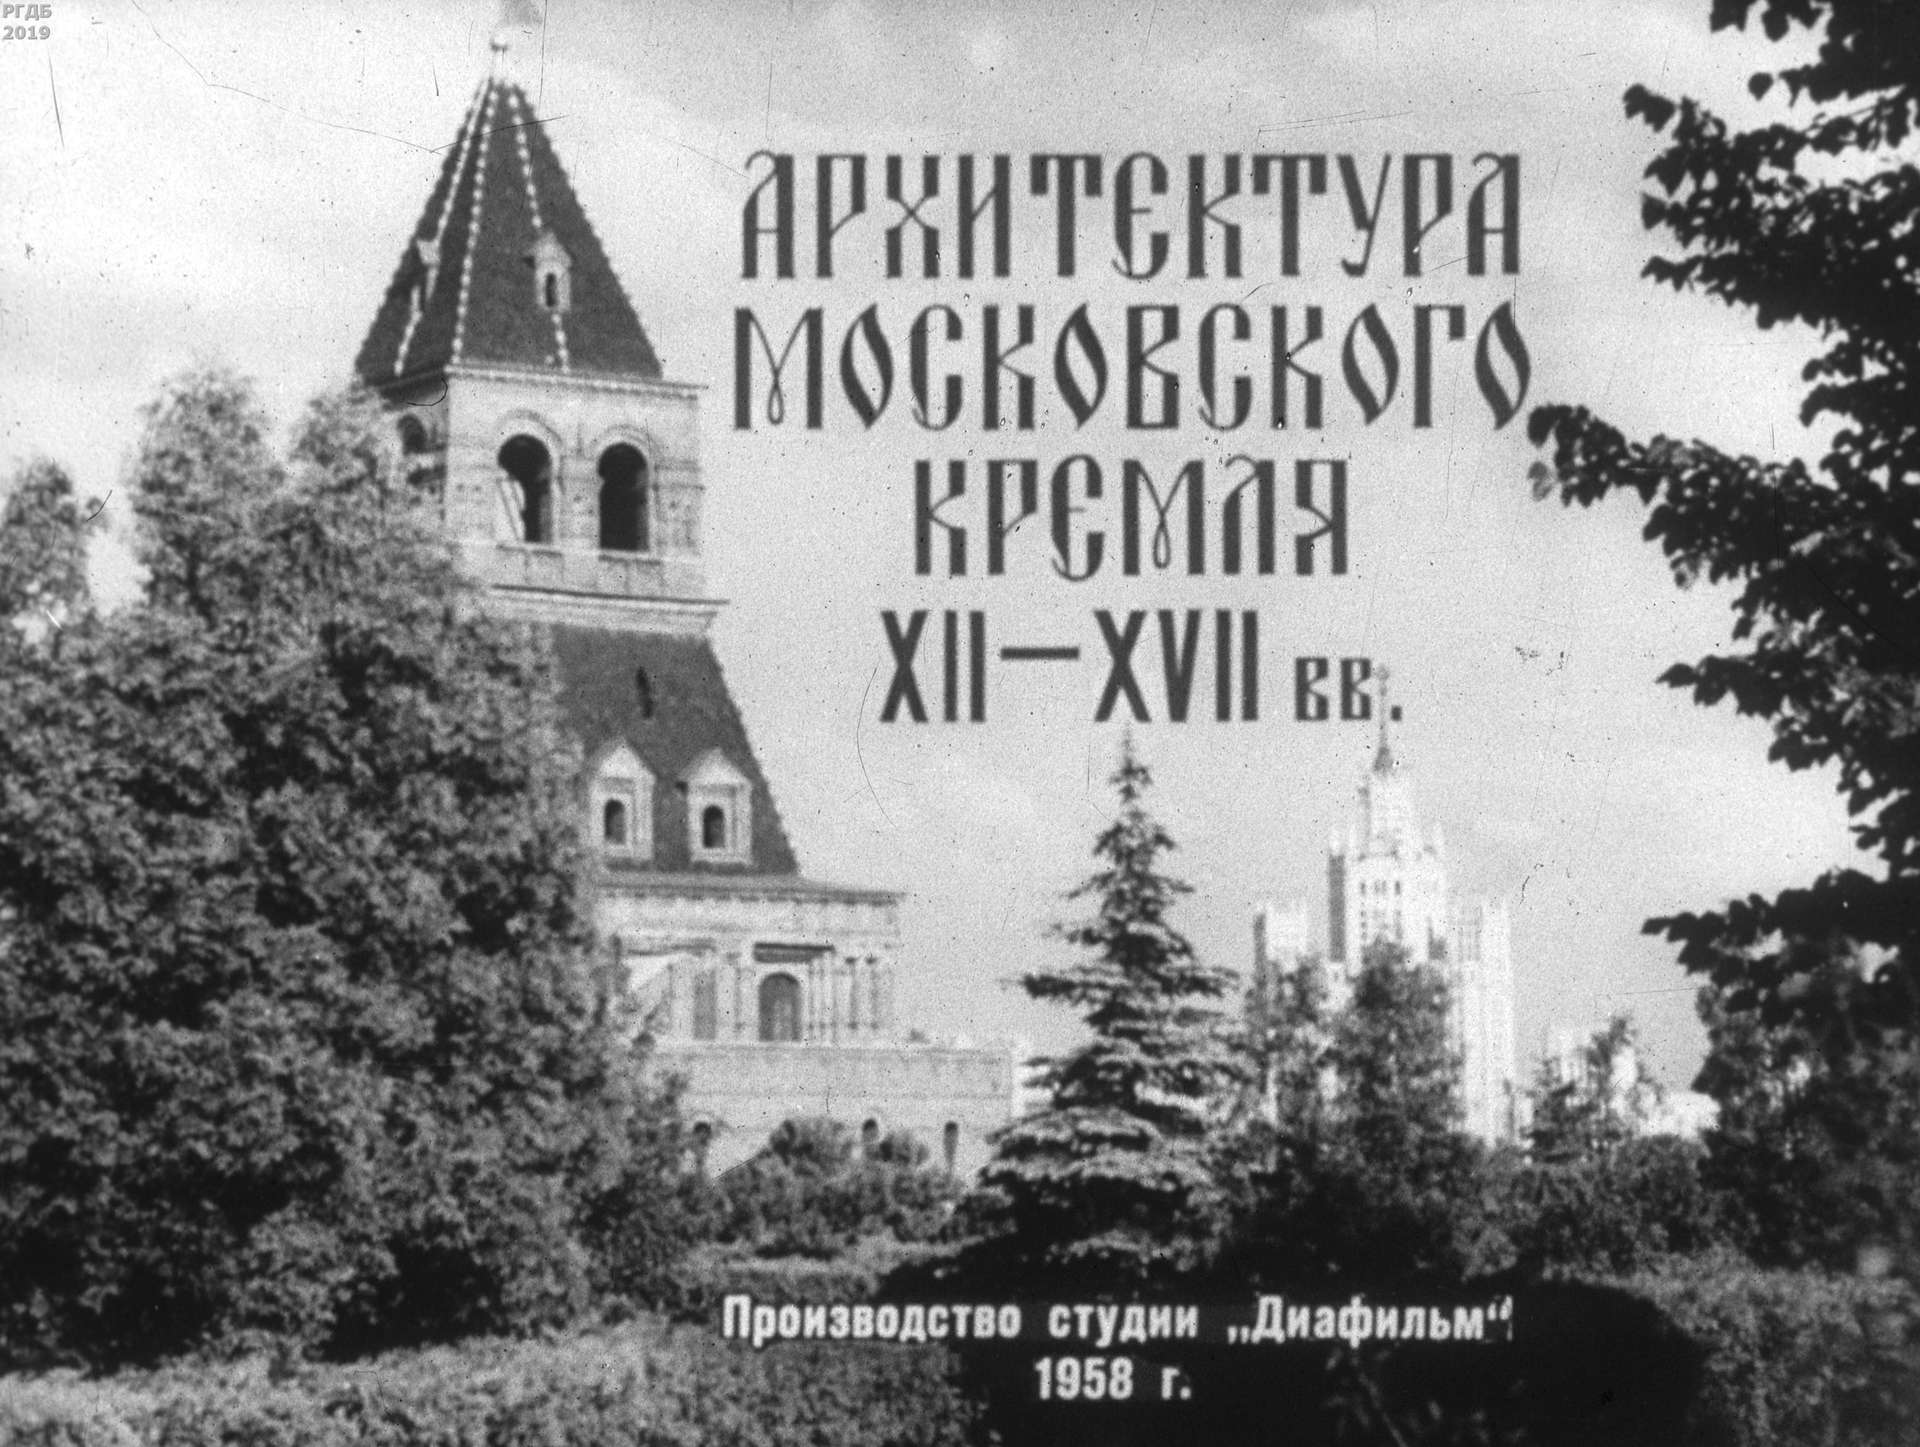 Архитектура Московского Кремля XII-XVII вв.